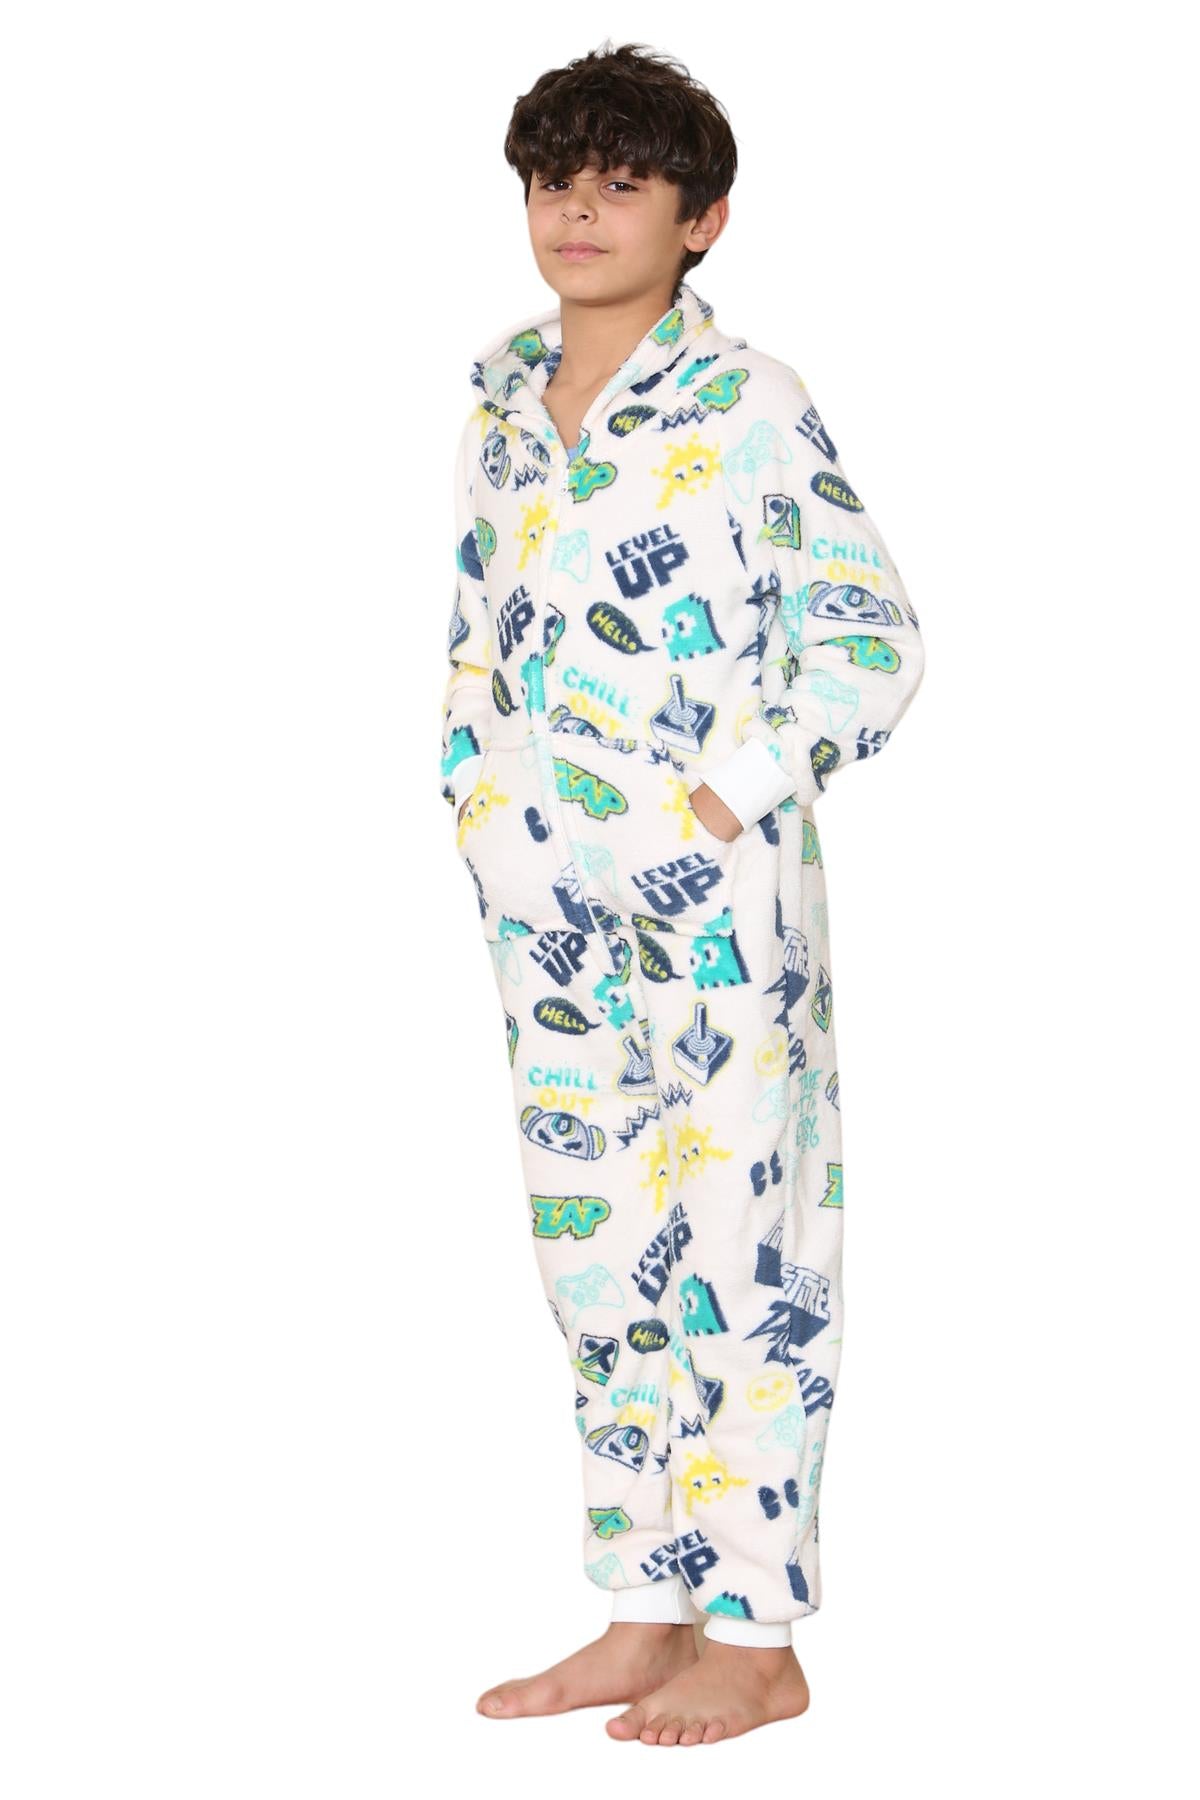 Kids Fleece A2Z Onesie One Piece Pyjamas Level Up Print Sleepsuit For Boys Girls